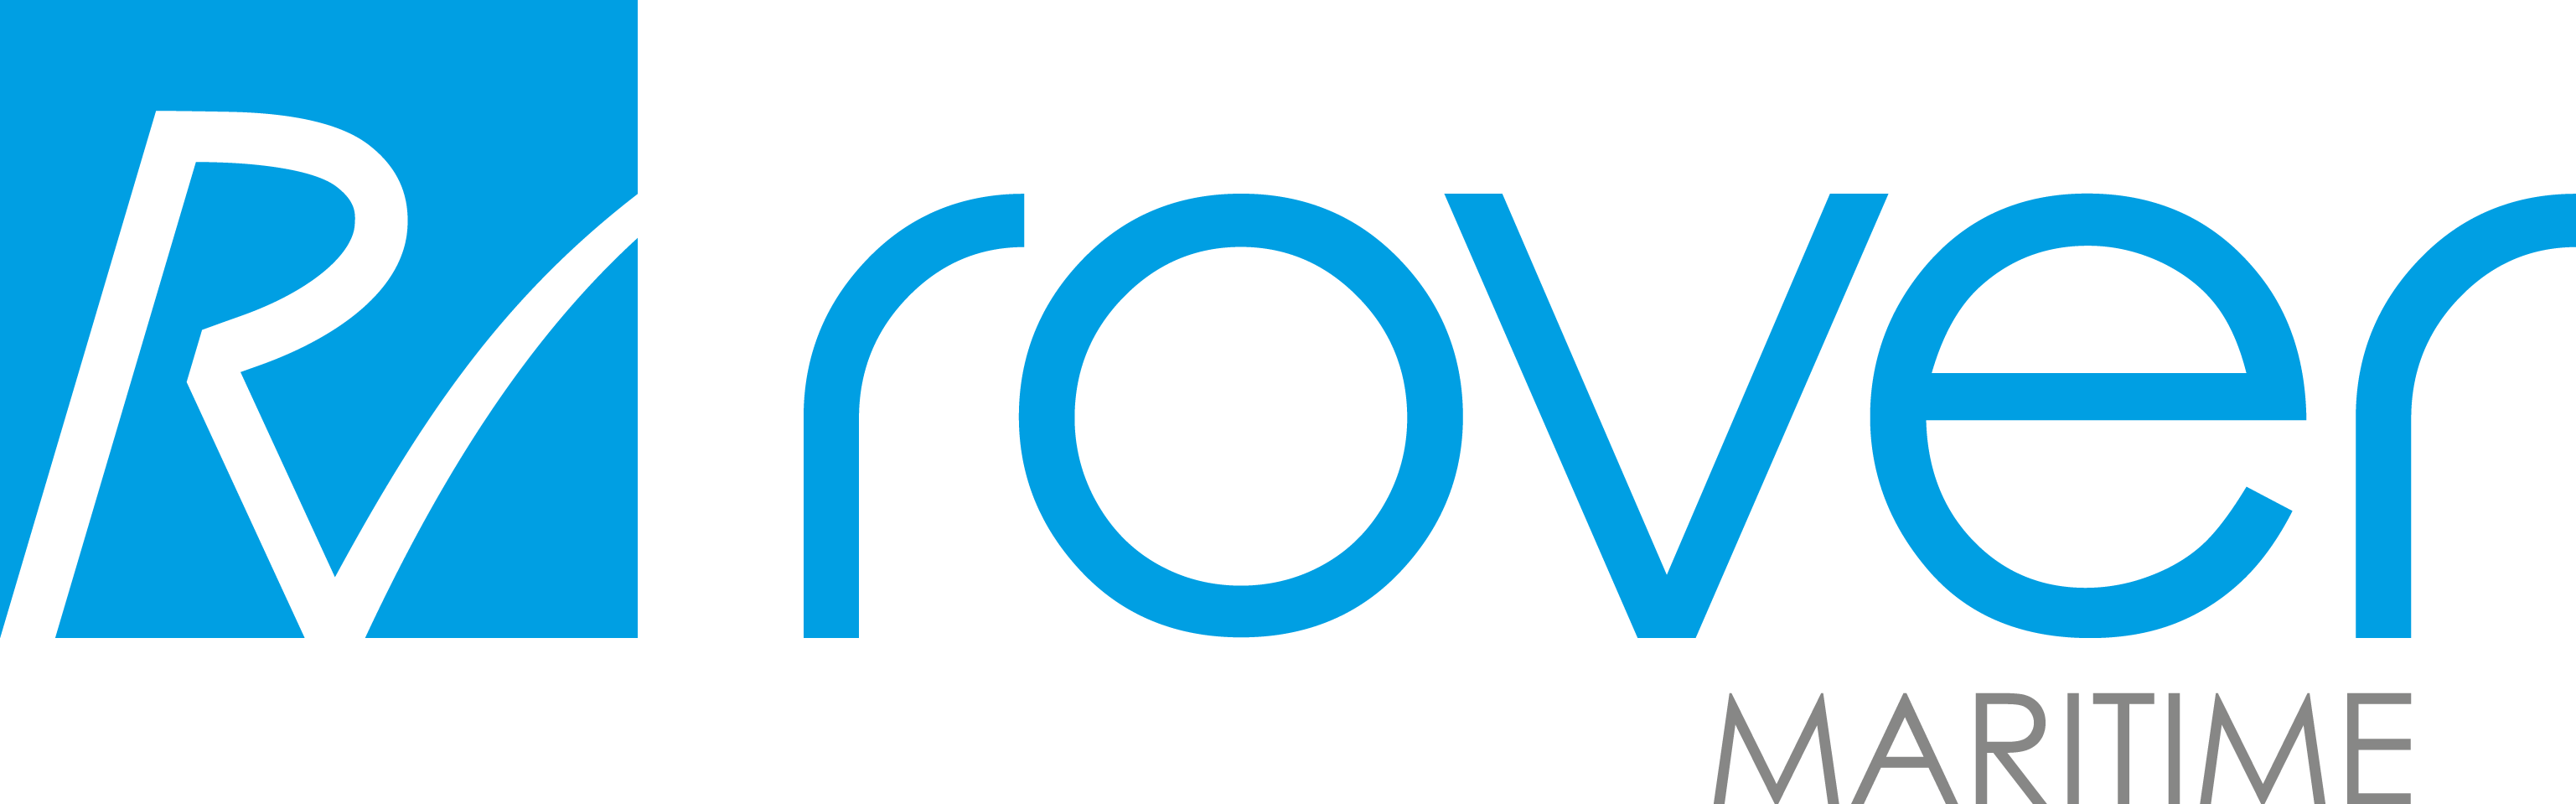 Rover Maritime logotipo